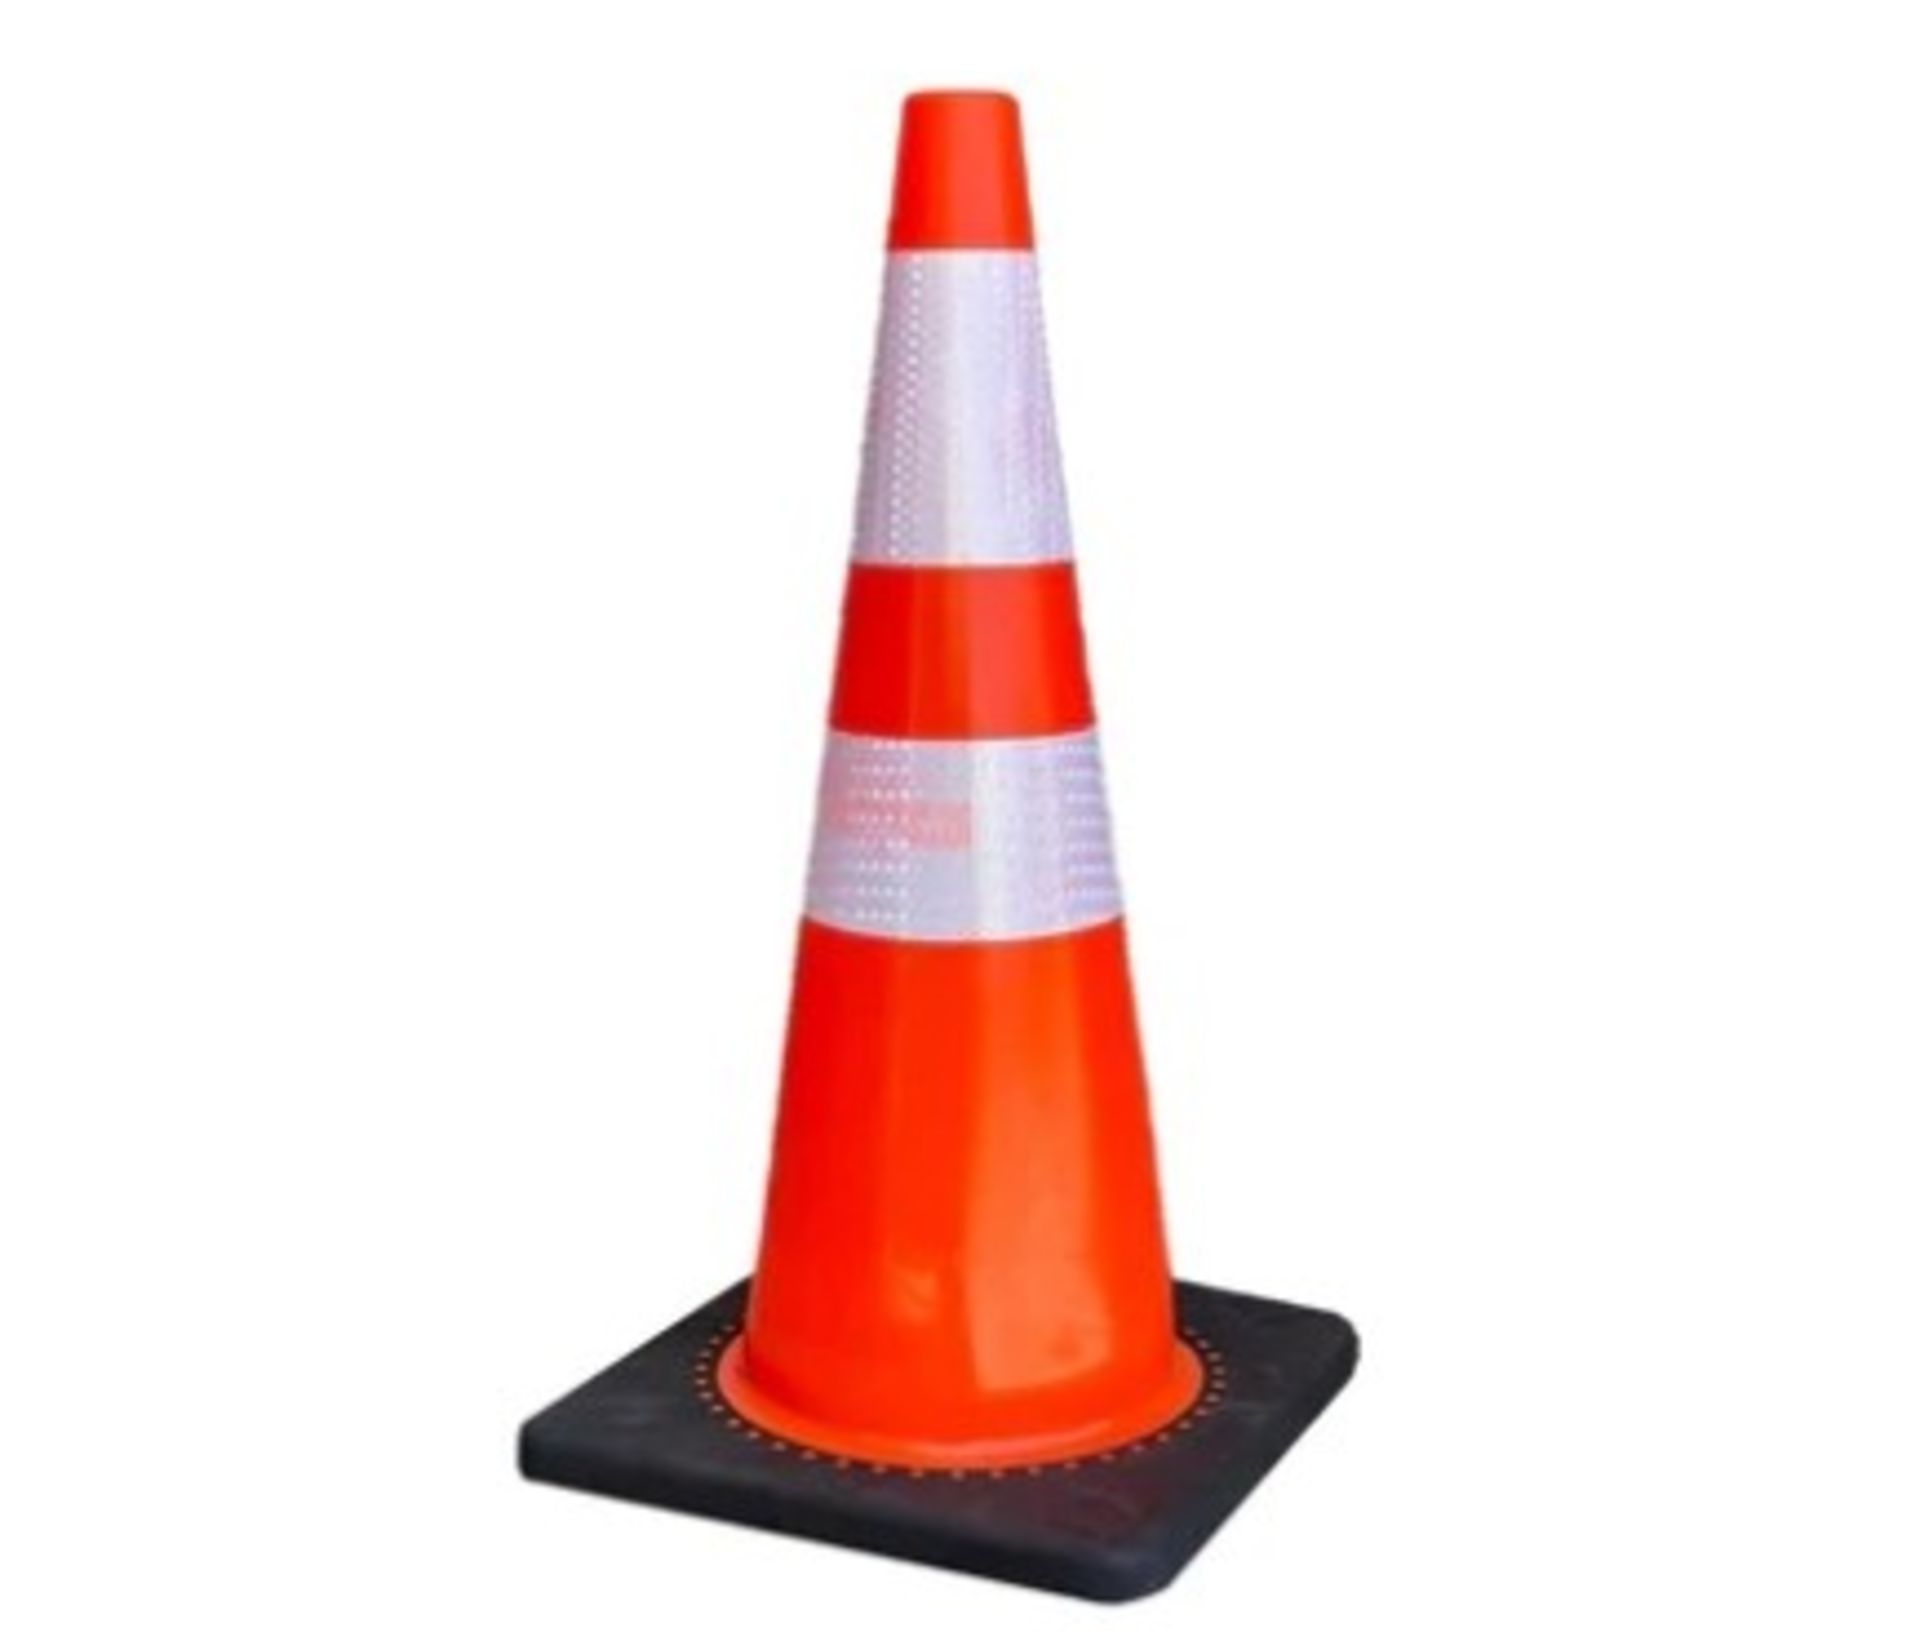 50 Traffic Cones - Image 3 of 3